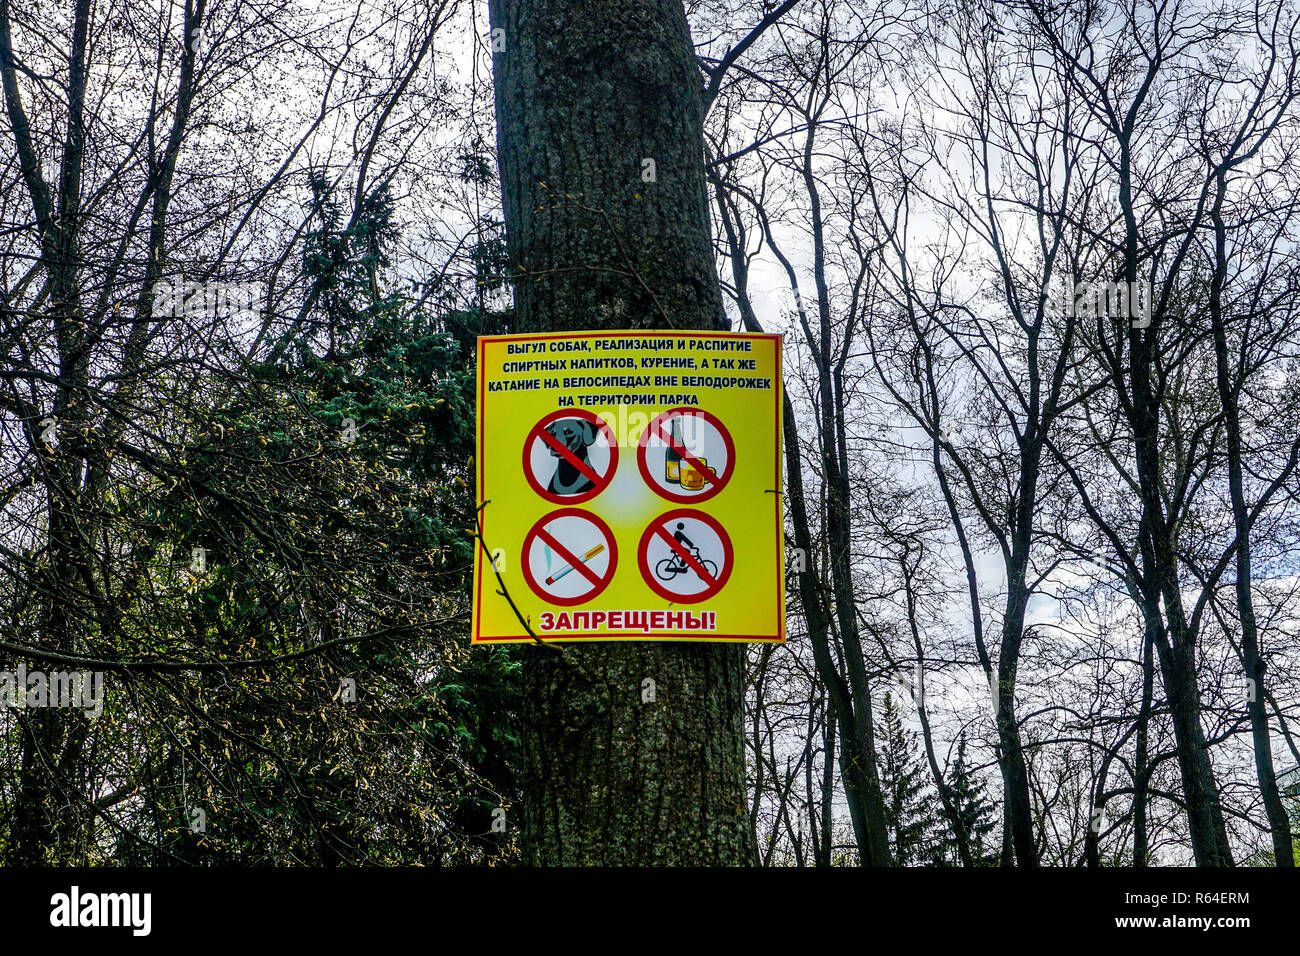 Minsk Rauchen Radfahren Hunde und Alkohole Warnschild am Gorky Park Stockfoto